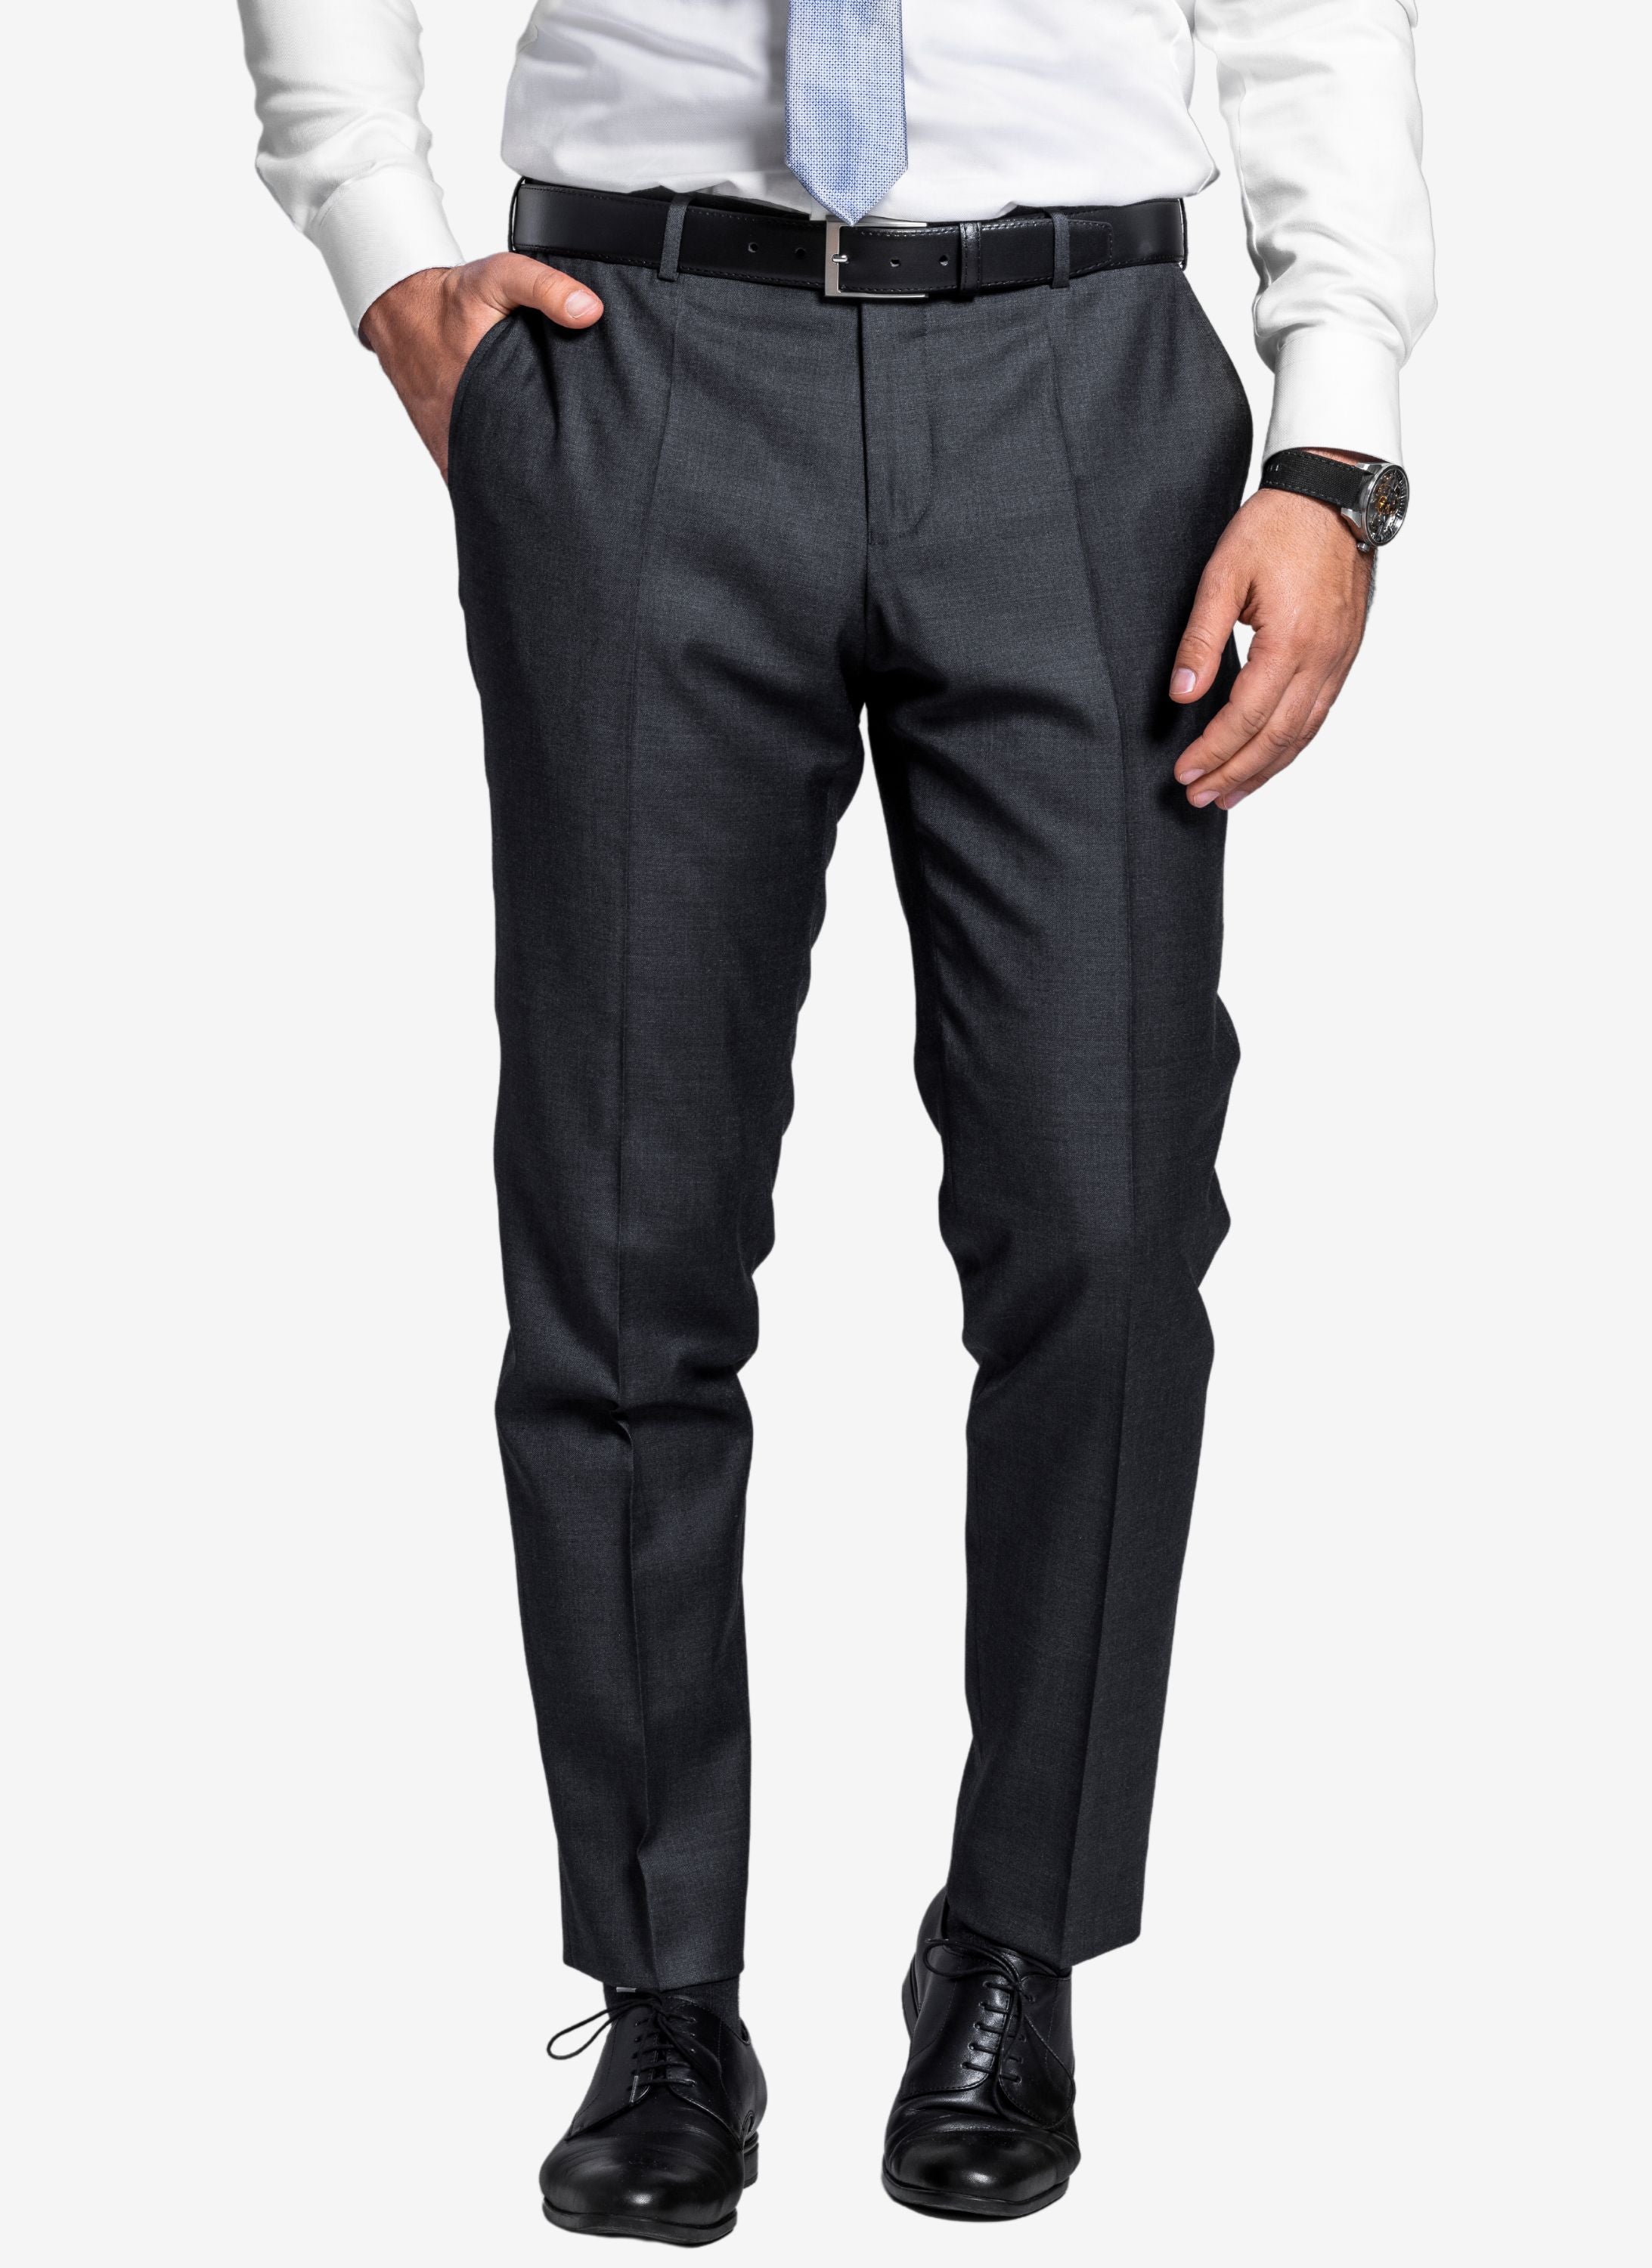 Hochwertige Anzughose ind Anthrazit mit schwarzem Ledergürtel und schwarzen Lederschuhen.